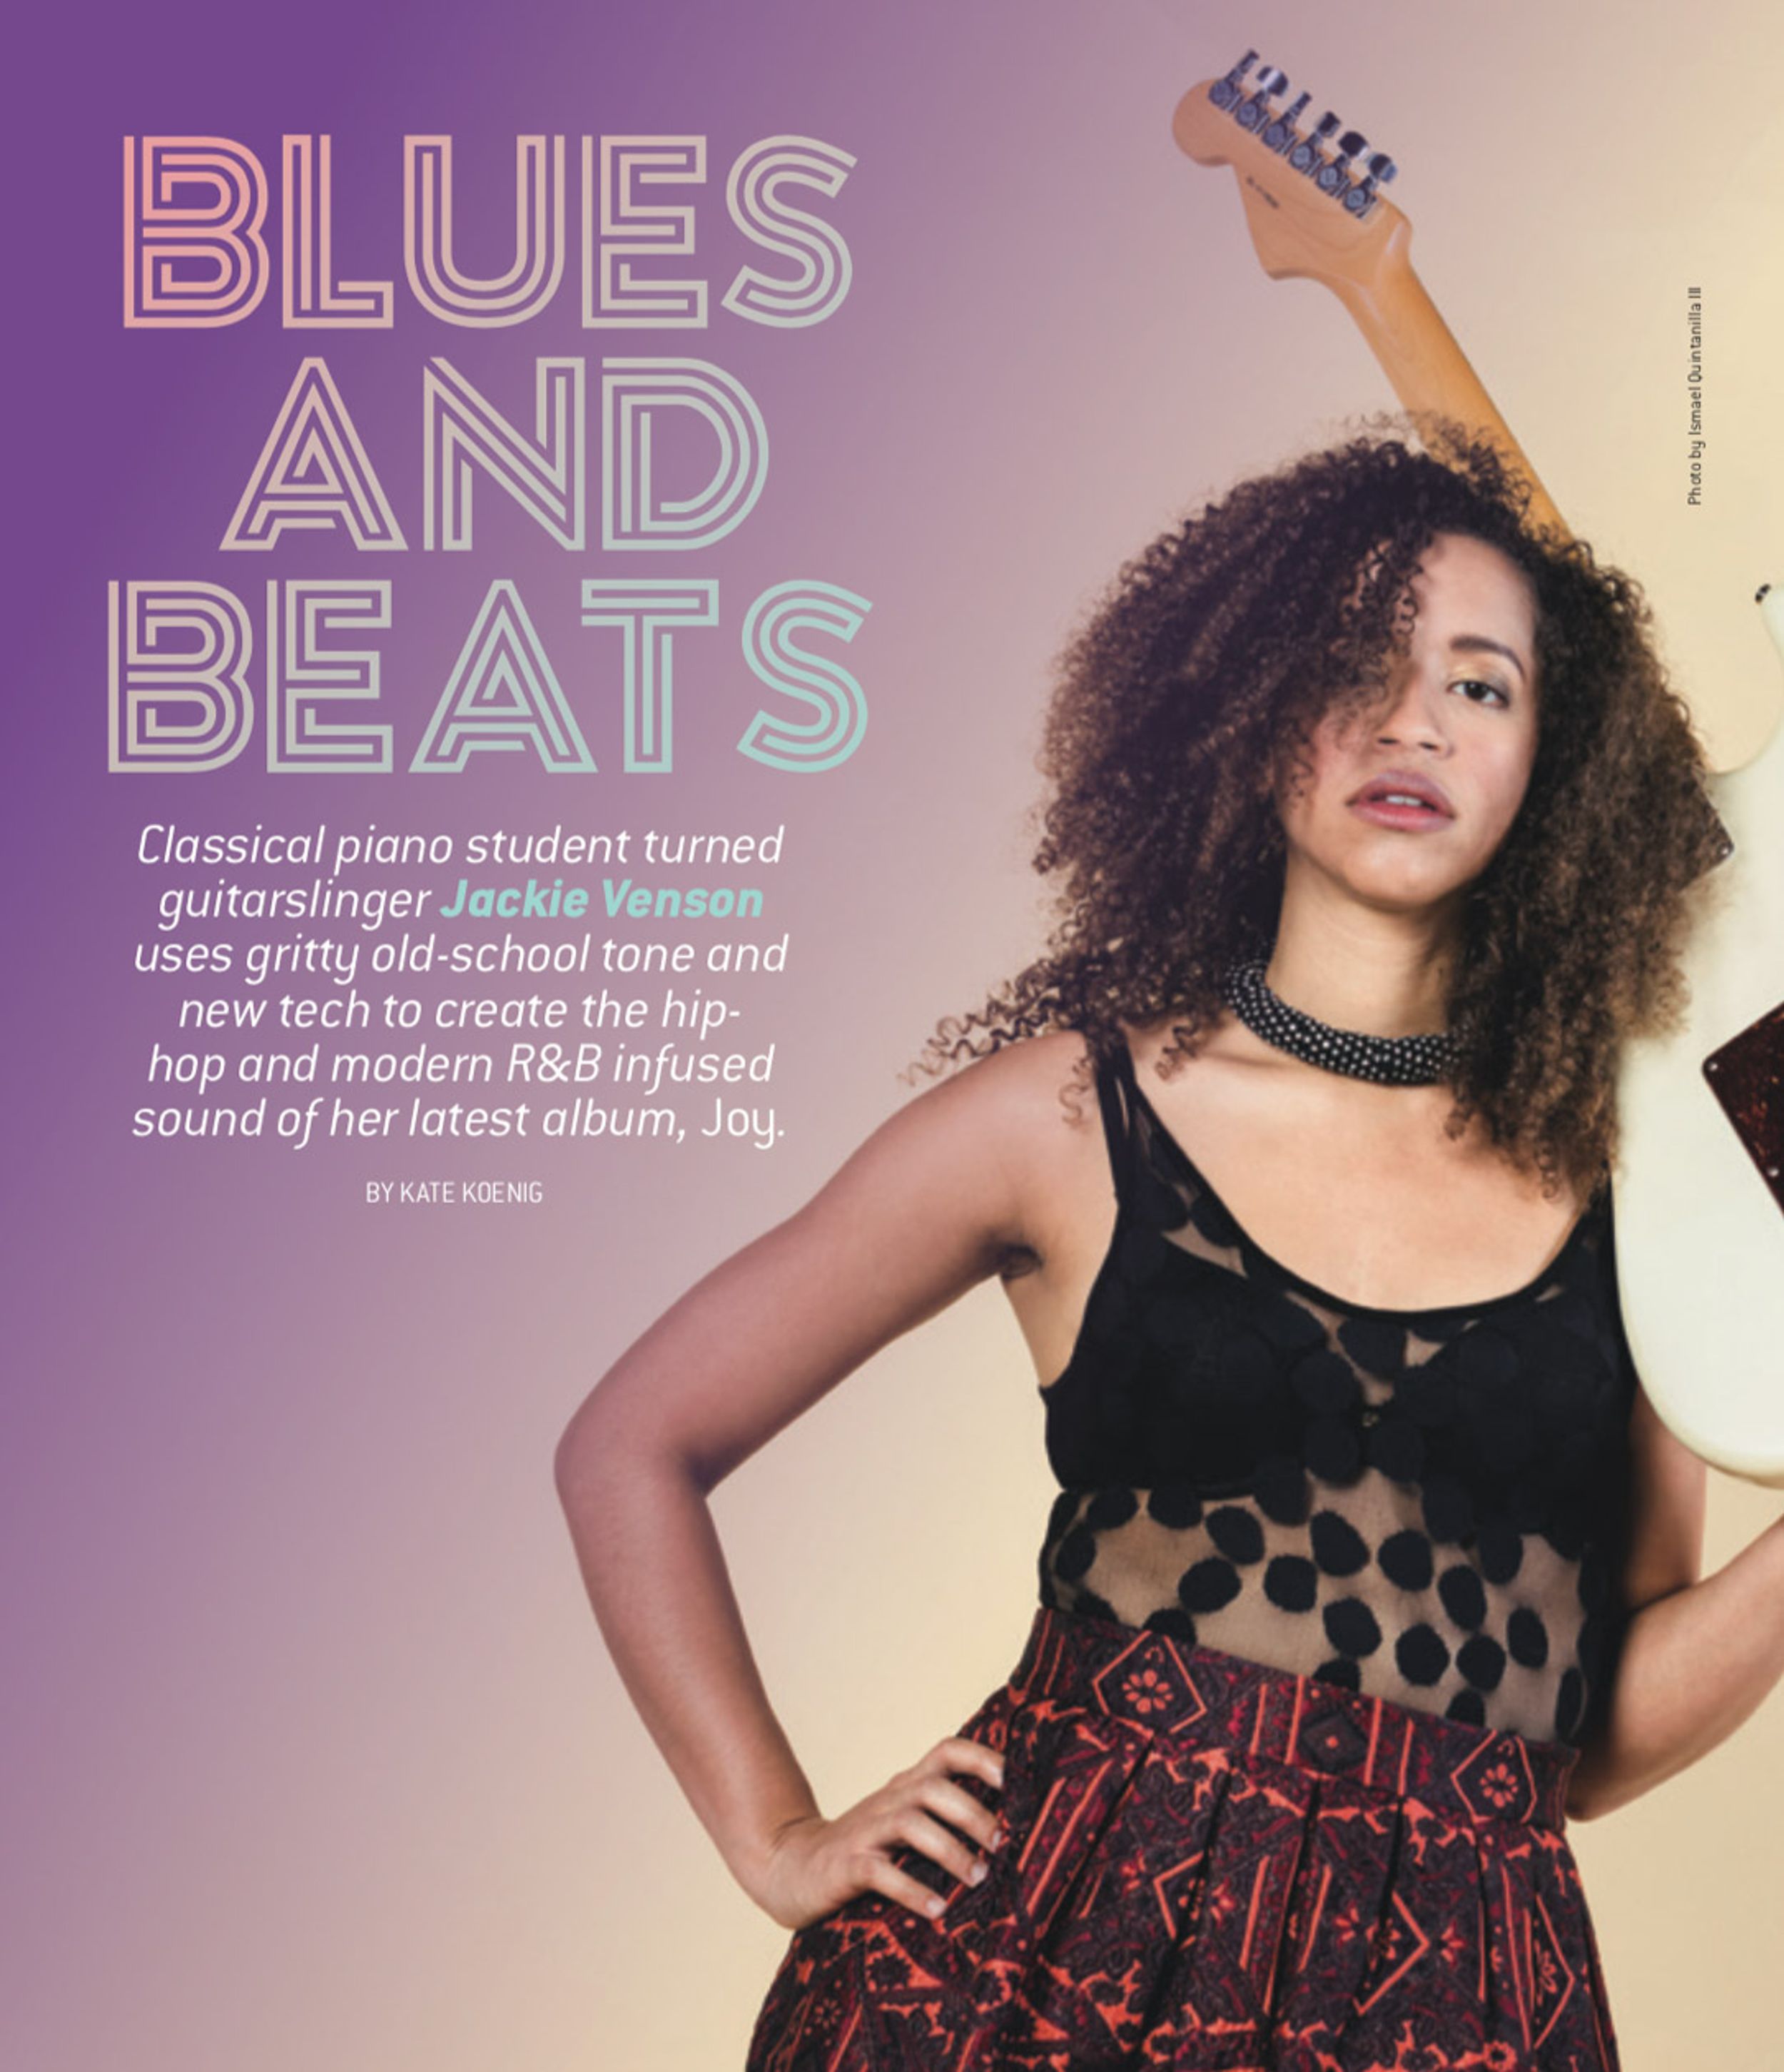 Jackie Venson’s Blues and Beats